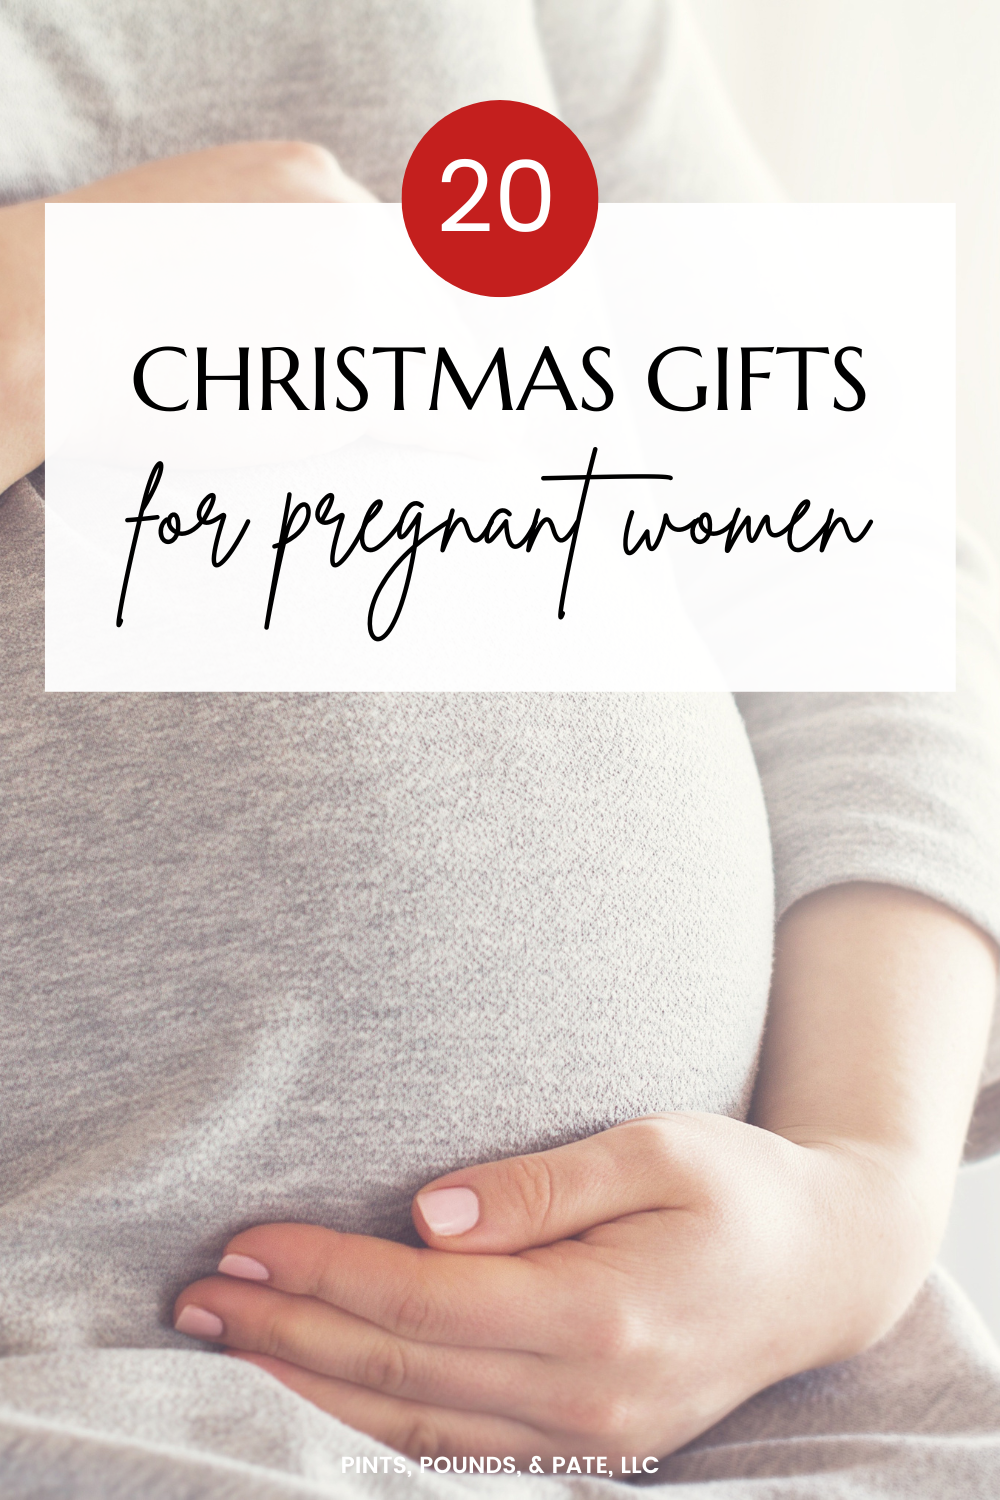 http://www.pintspoundsandpate.com/uploads/1/2/0/9/120994087/christmas-gift-ideas-for-pregnant-women-6_orig.png